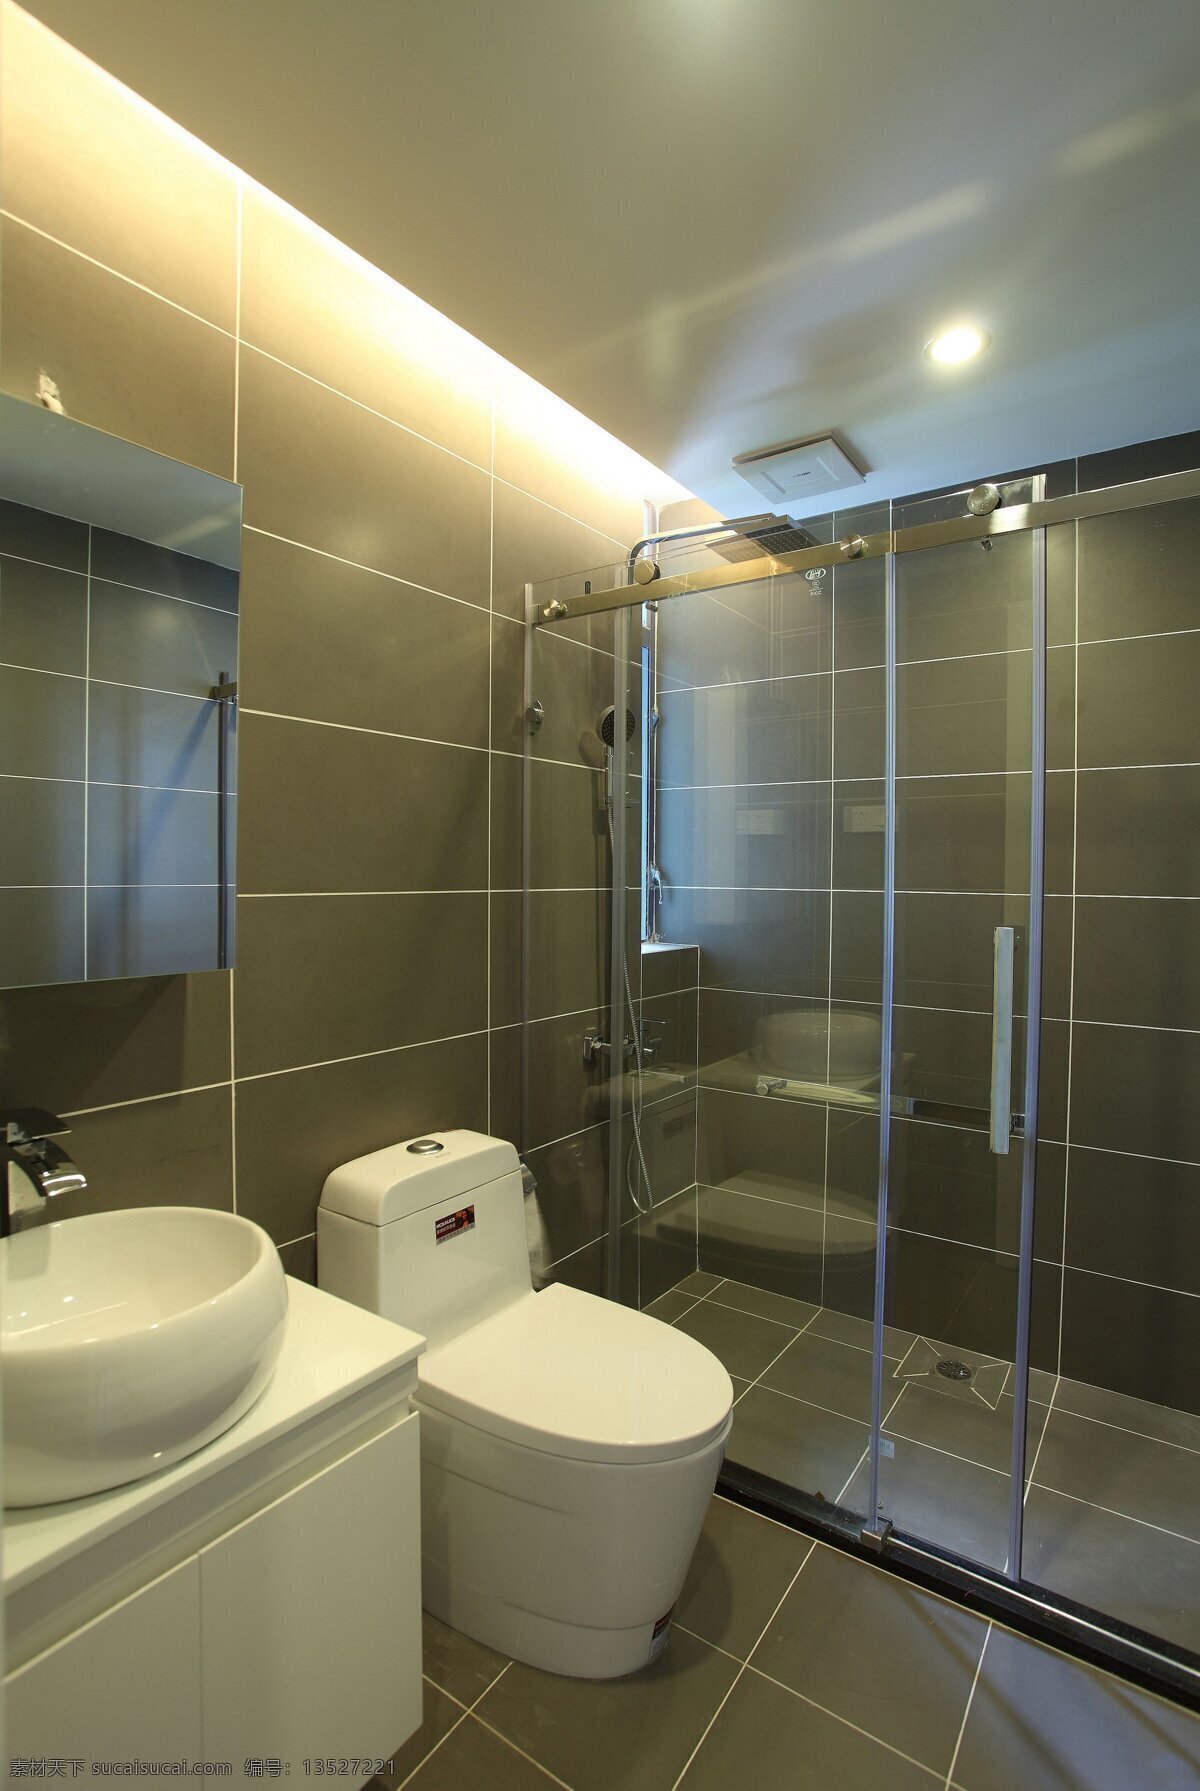 现代 简约 卫生间 浴室 马桶 设计图 家居 家居生活 室内设计 装修 室内 家具 装修设计 环境设计 效果图